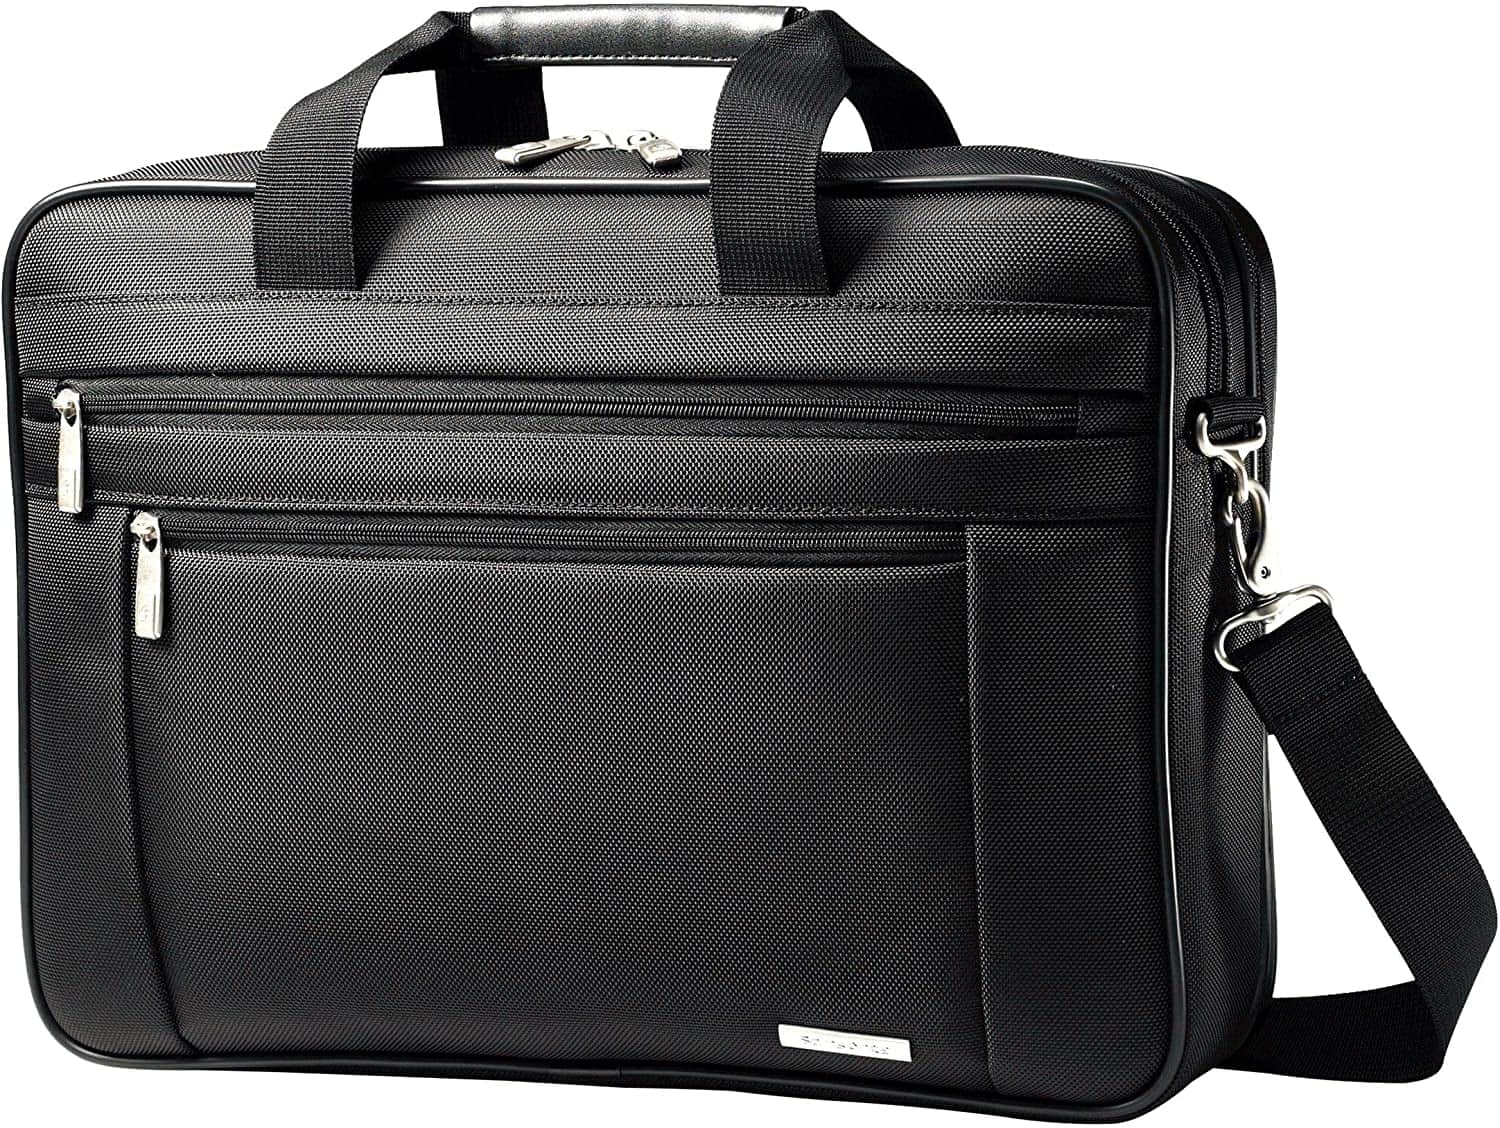 Samsonite Classic Laptop Bag Review